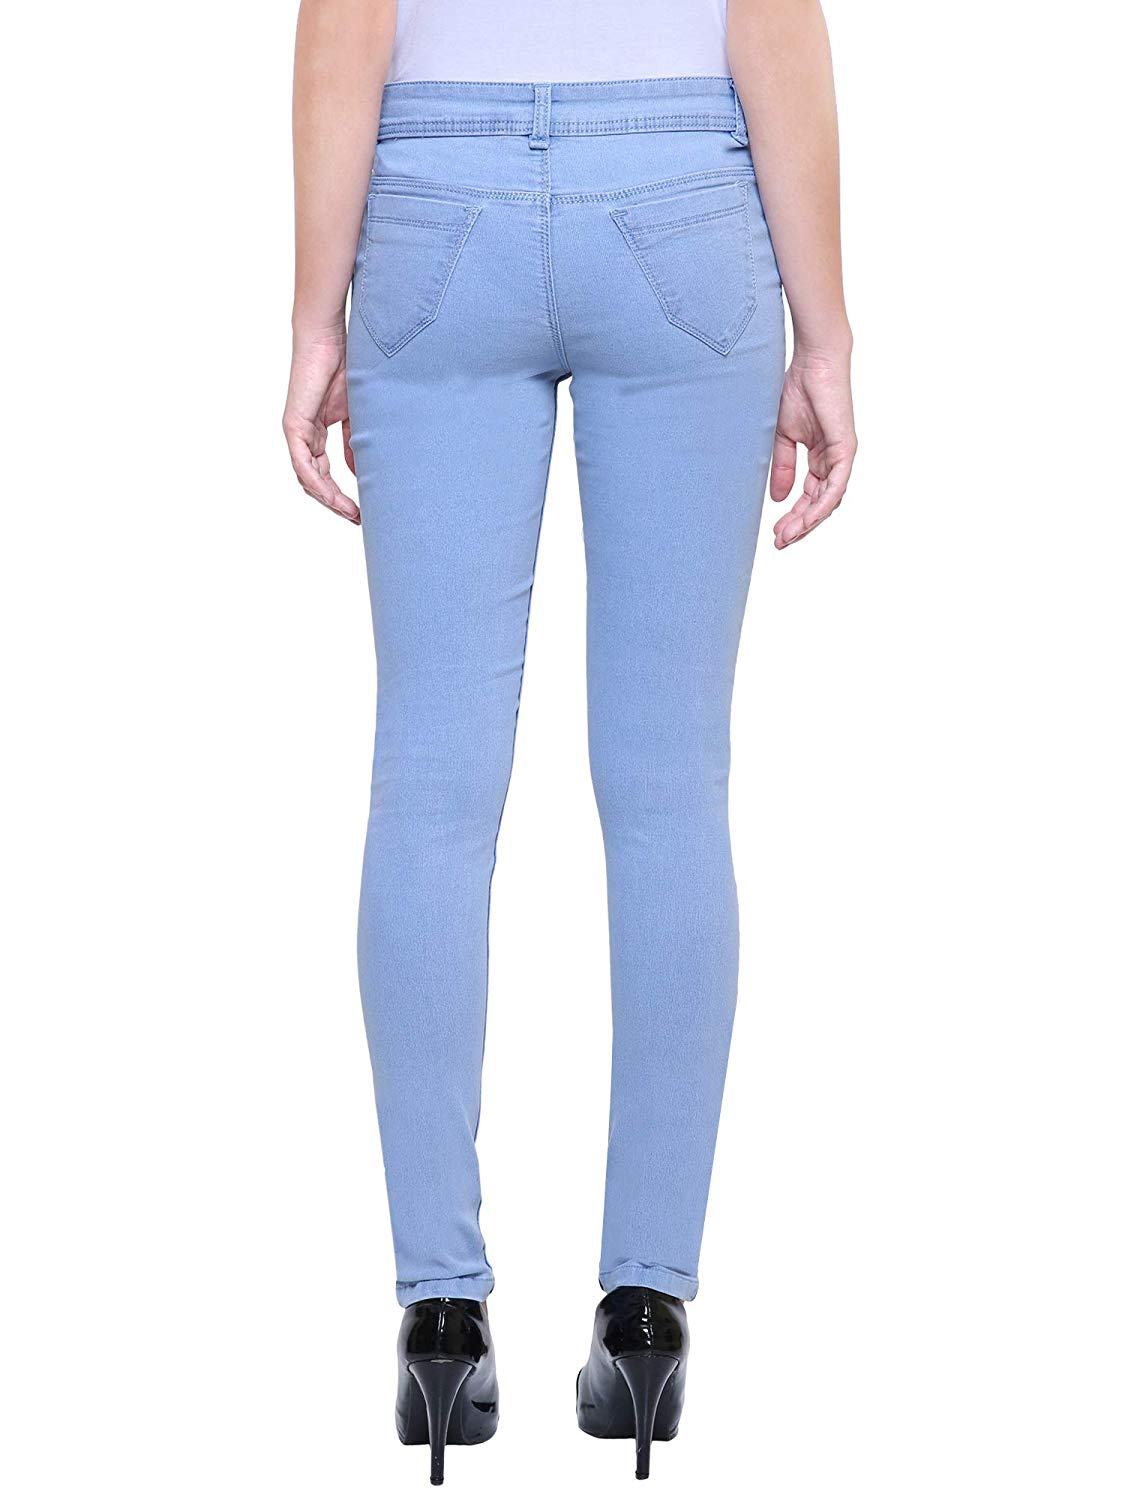 Womens Jeans Below 500, Buy Jeans Under 